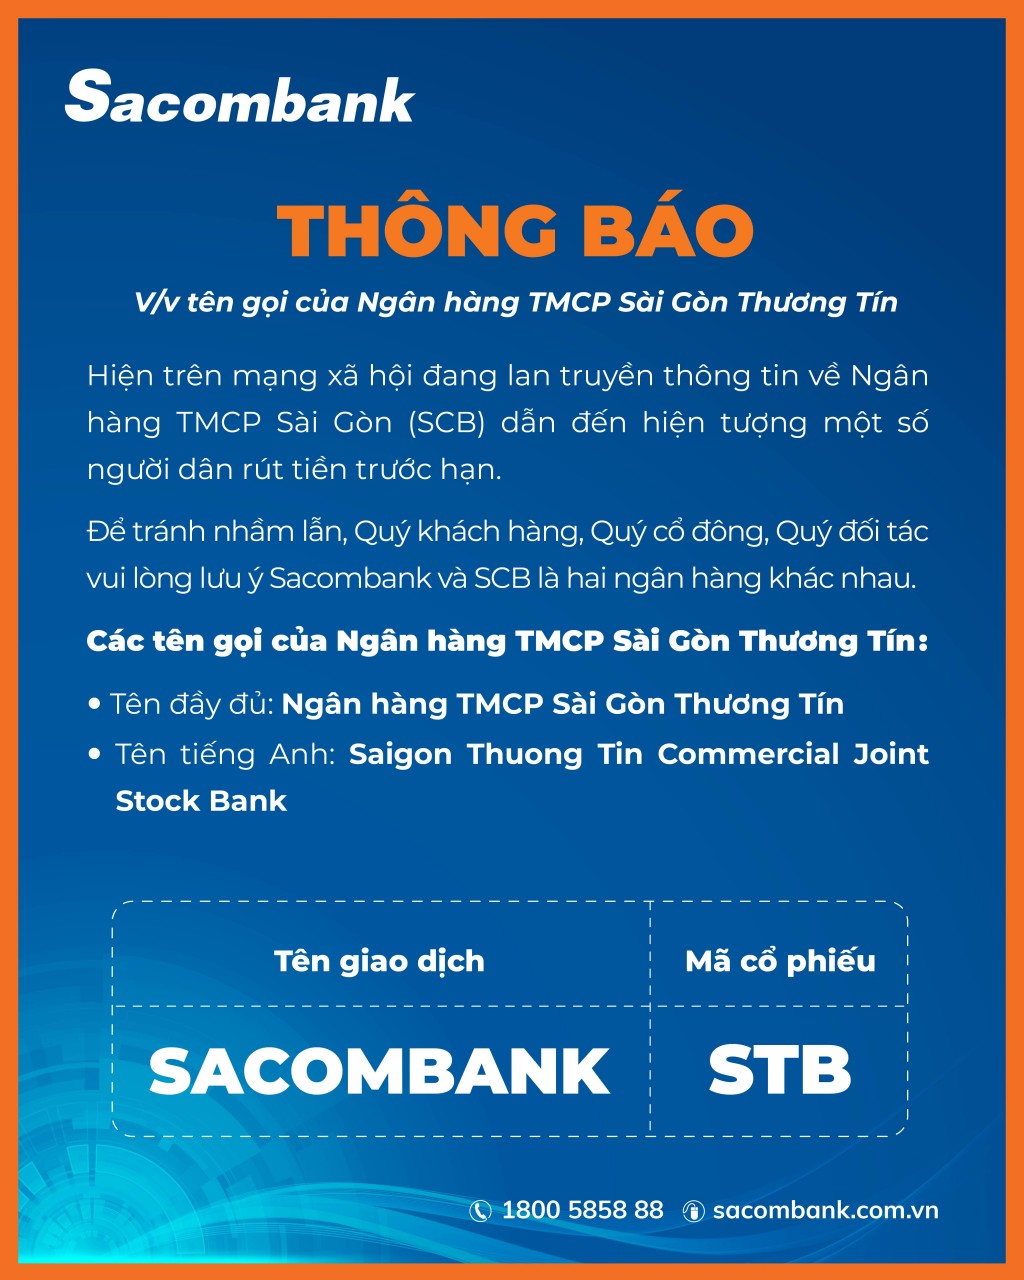 Thông báo của Sacombank